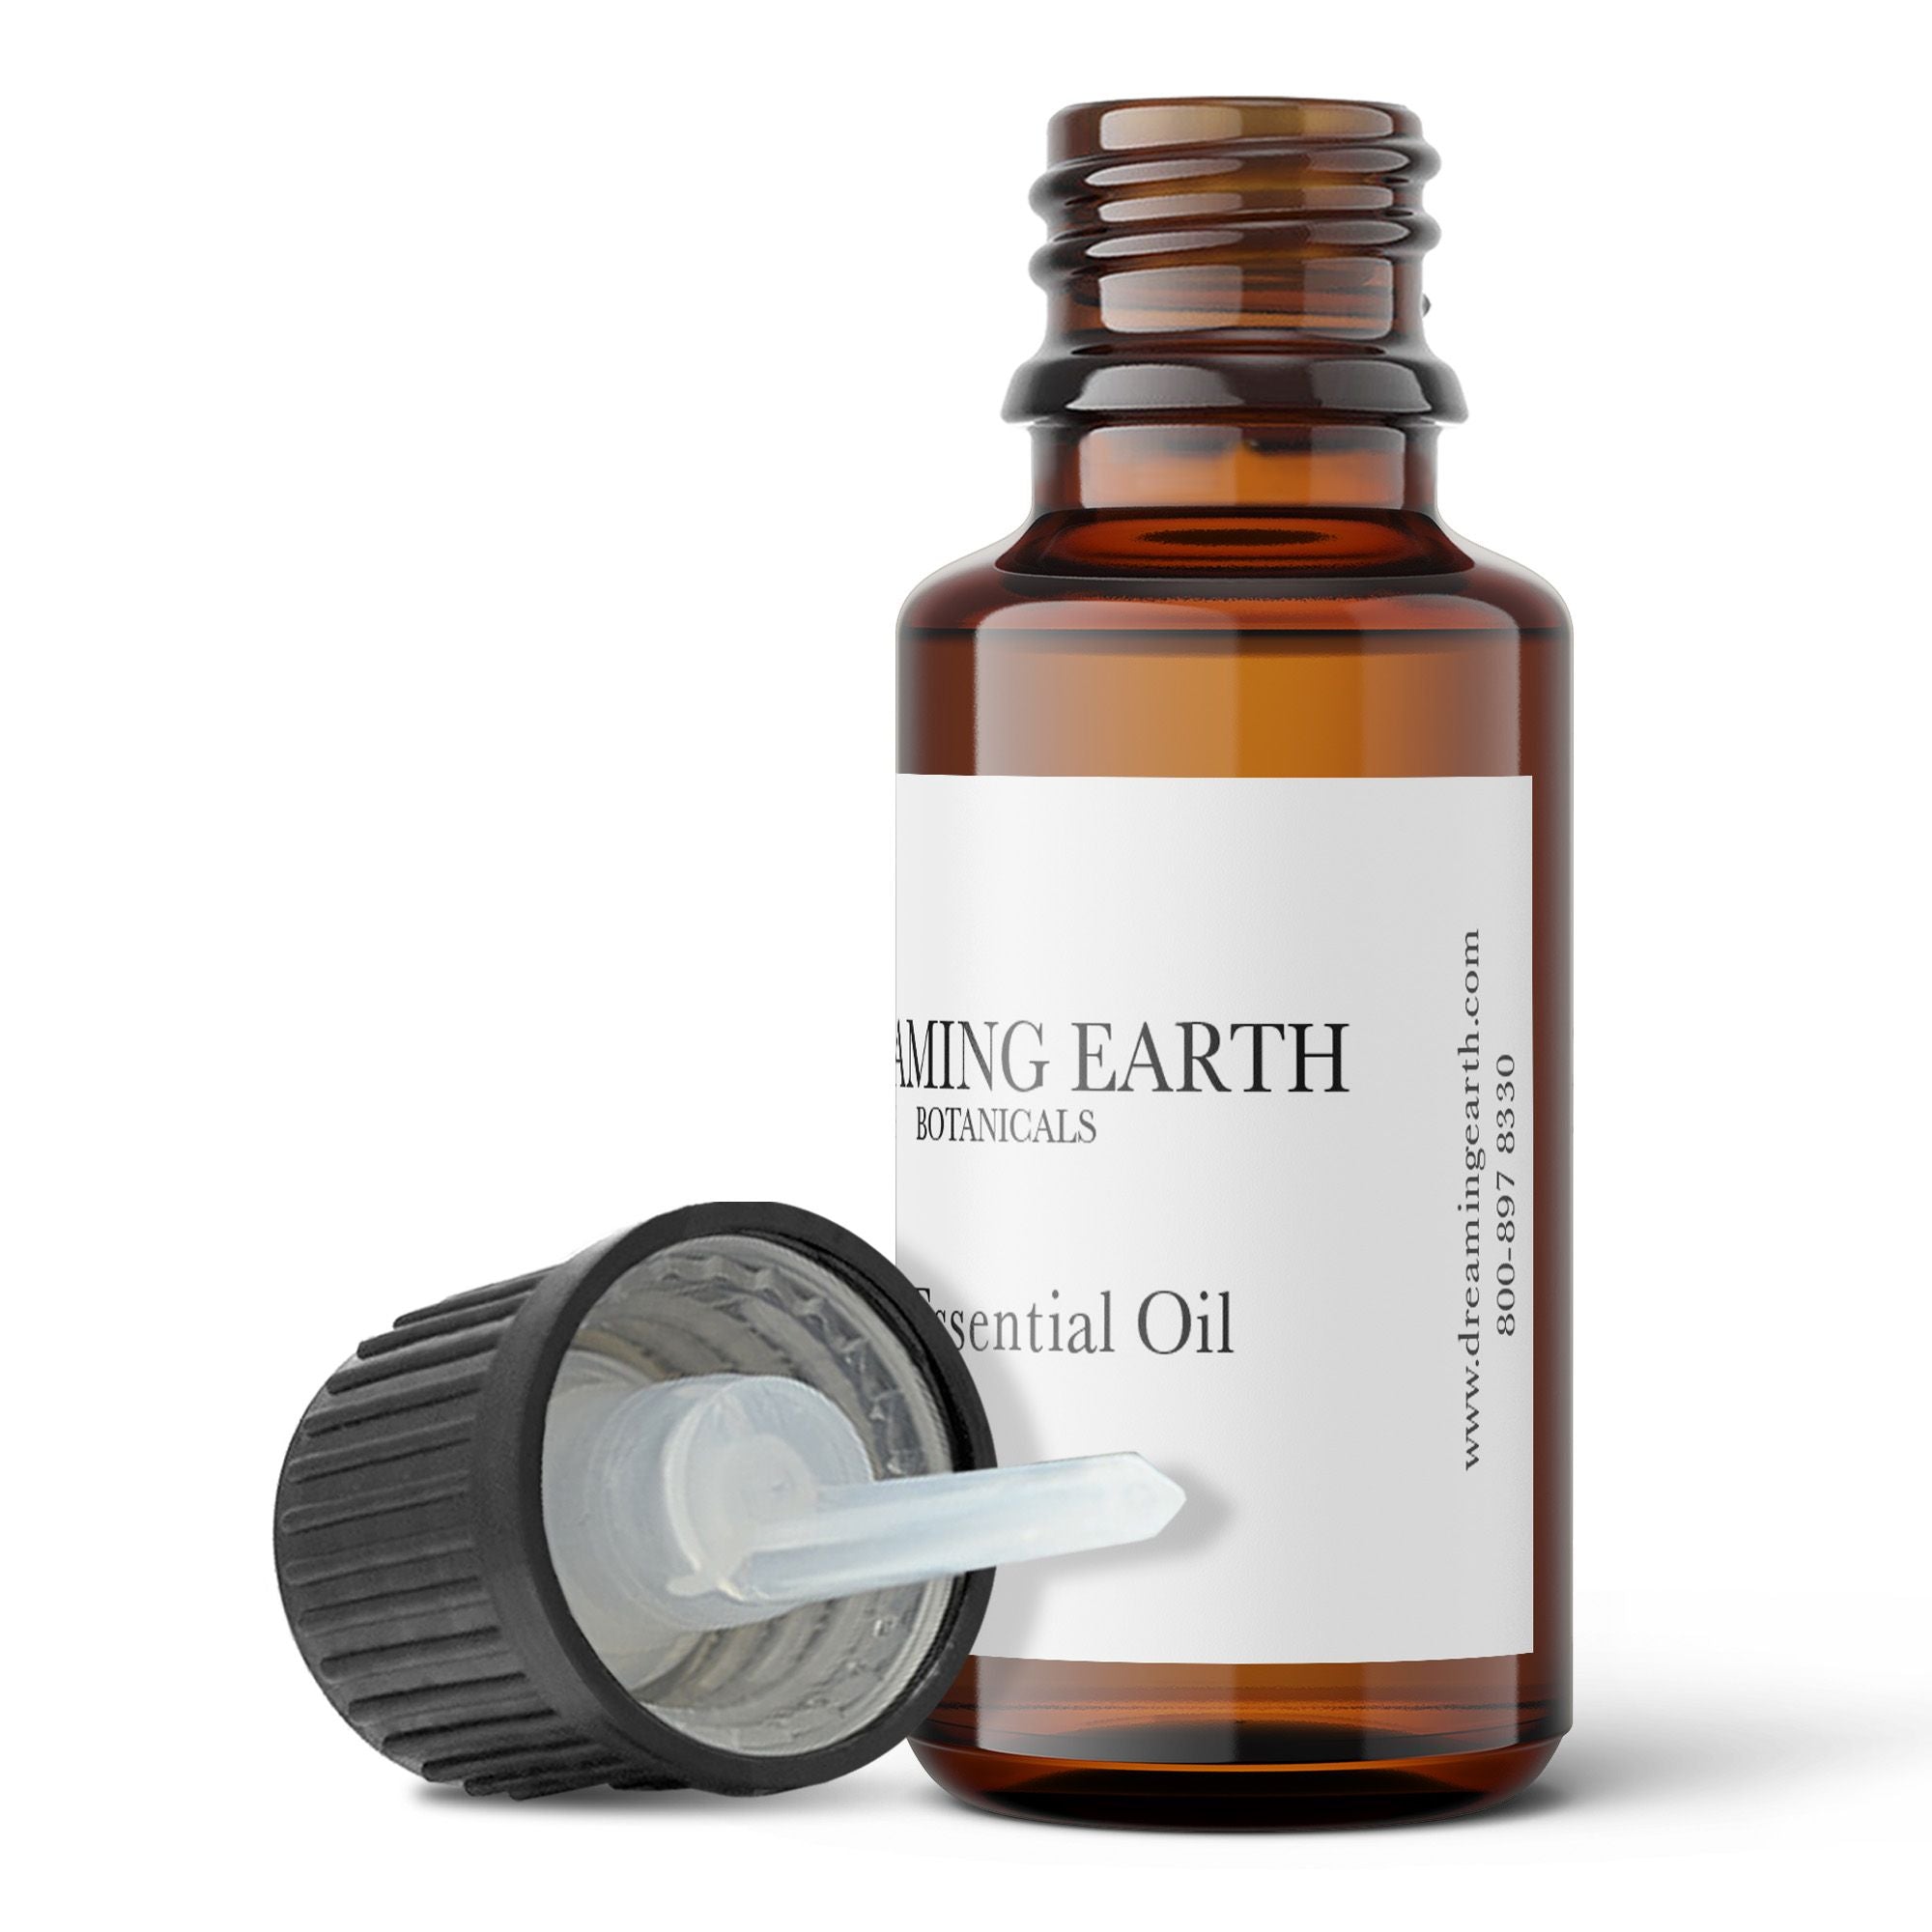 Oregano Essential Oil – Earth Sticks & Scents